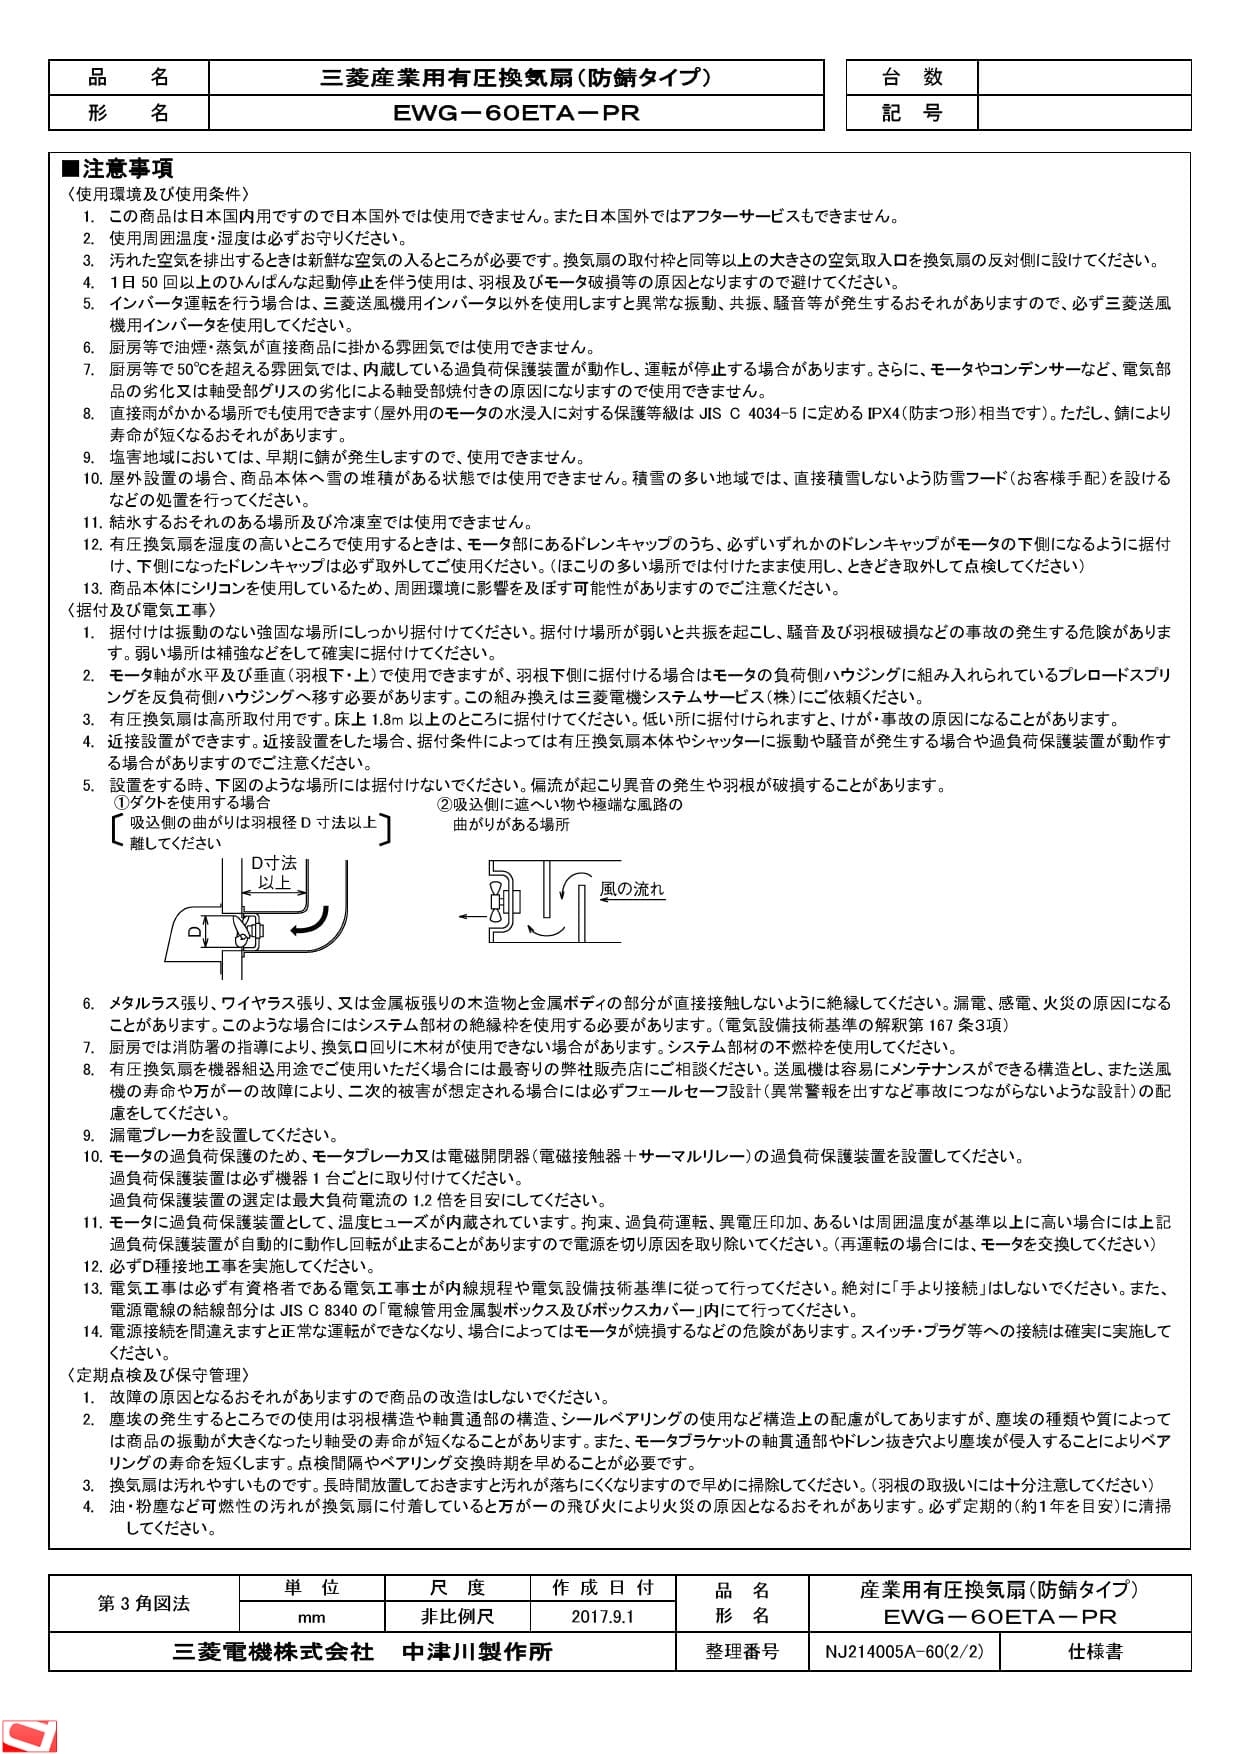 Tokubai 三菱 換気扇 産業用送風機 [本体] 有圧換気扇EWG-60ETA2-PR EWG-60ETA2-PR 超可爱-css.edu.om